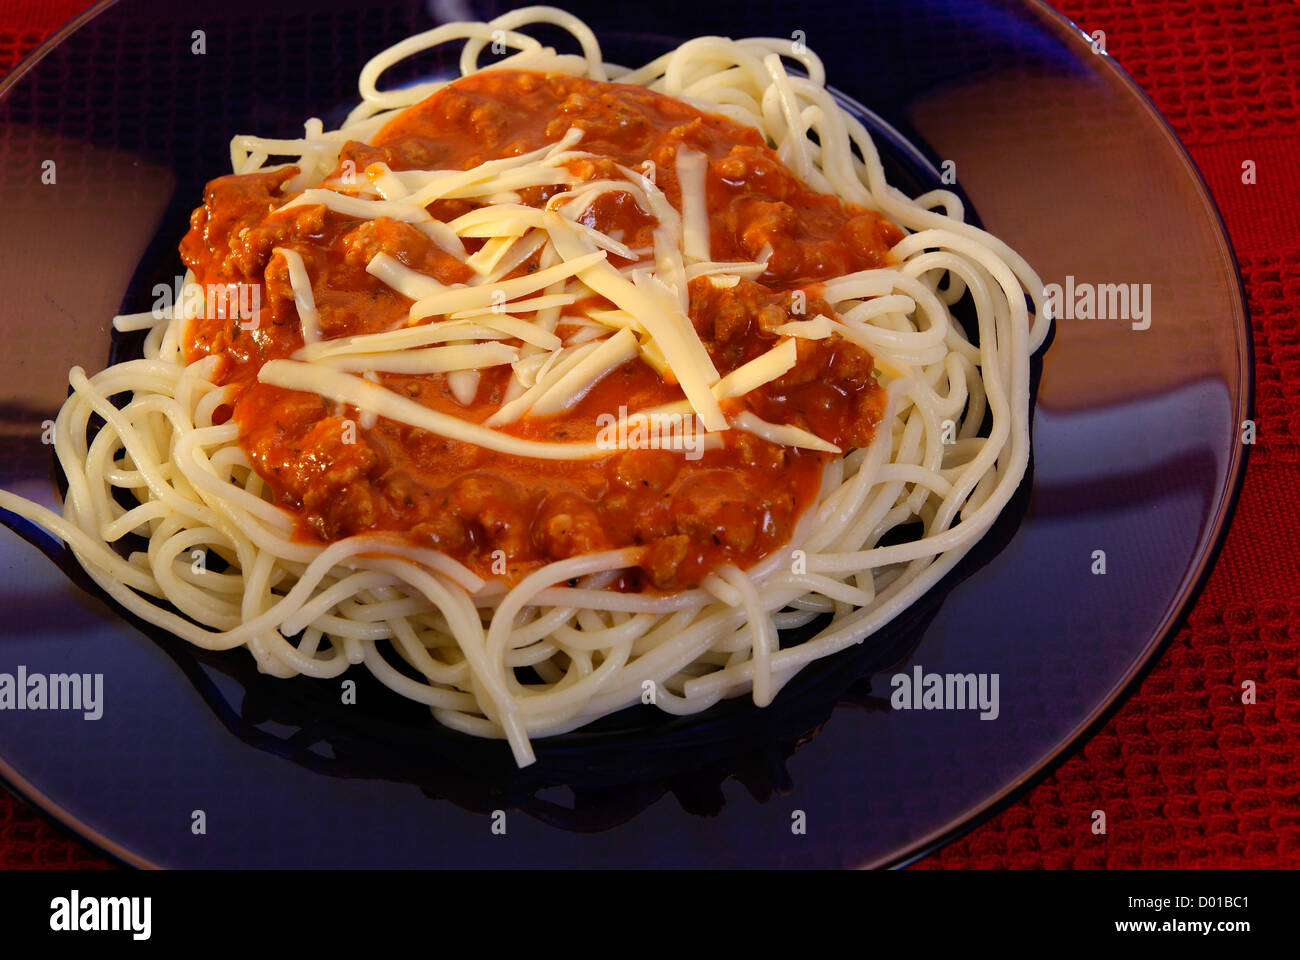 Recién cocinado espaguetis con salsa de tomate y carne Foto de stock